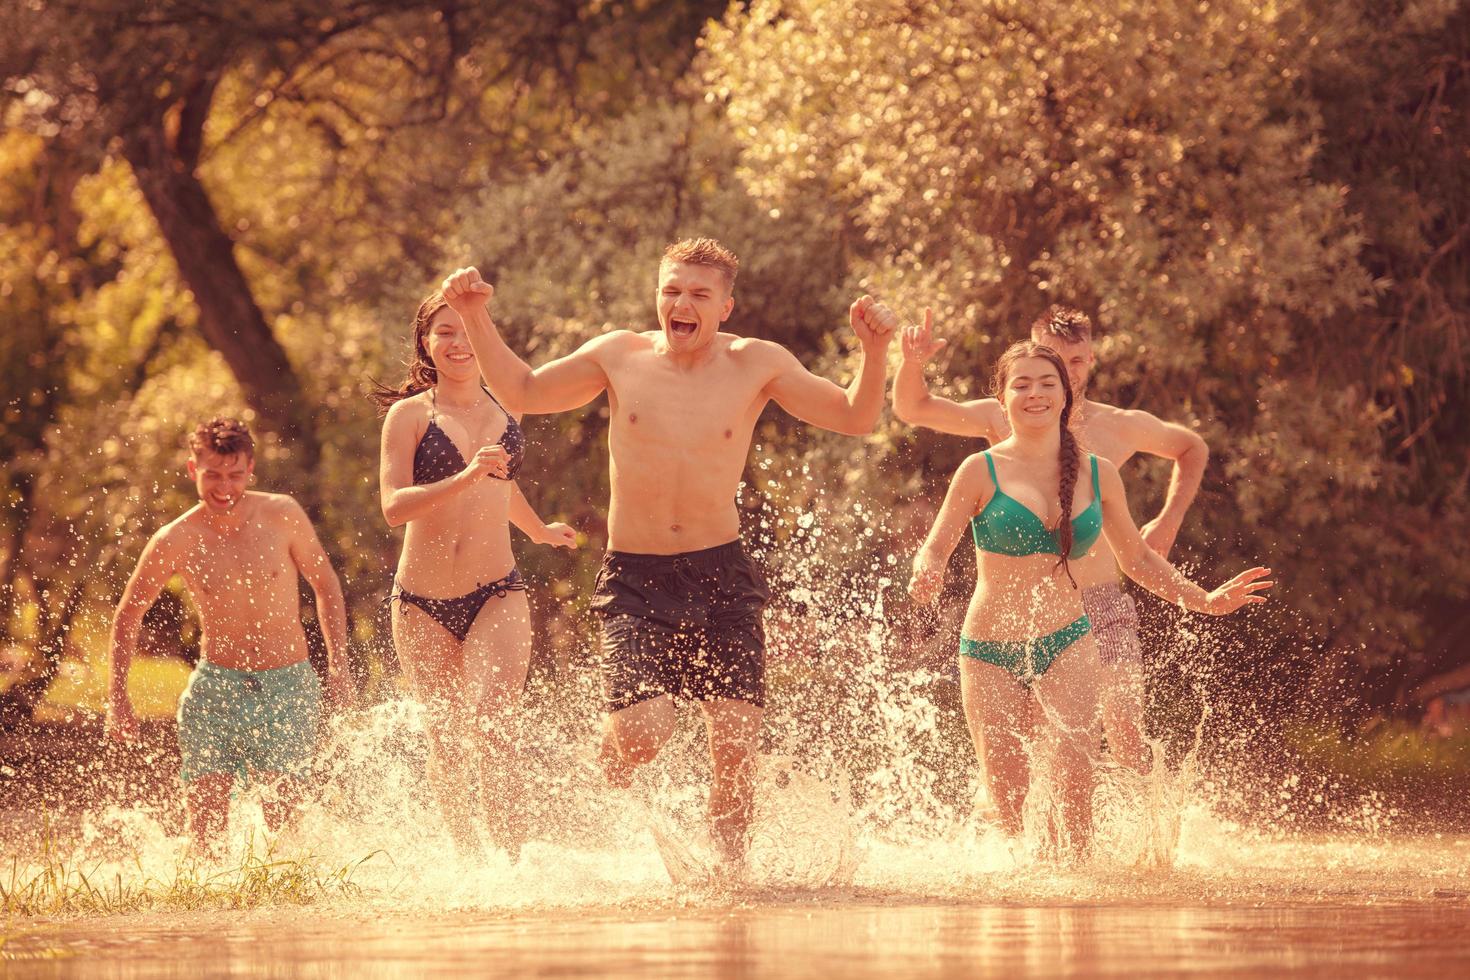 estate gioia amici avendo divertimento su fiume foto